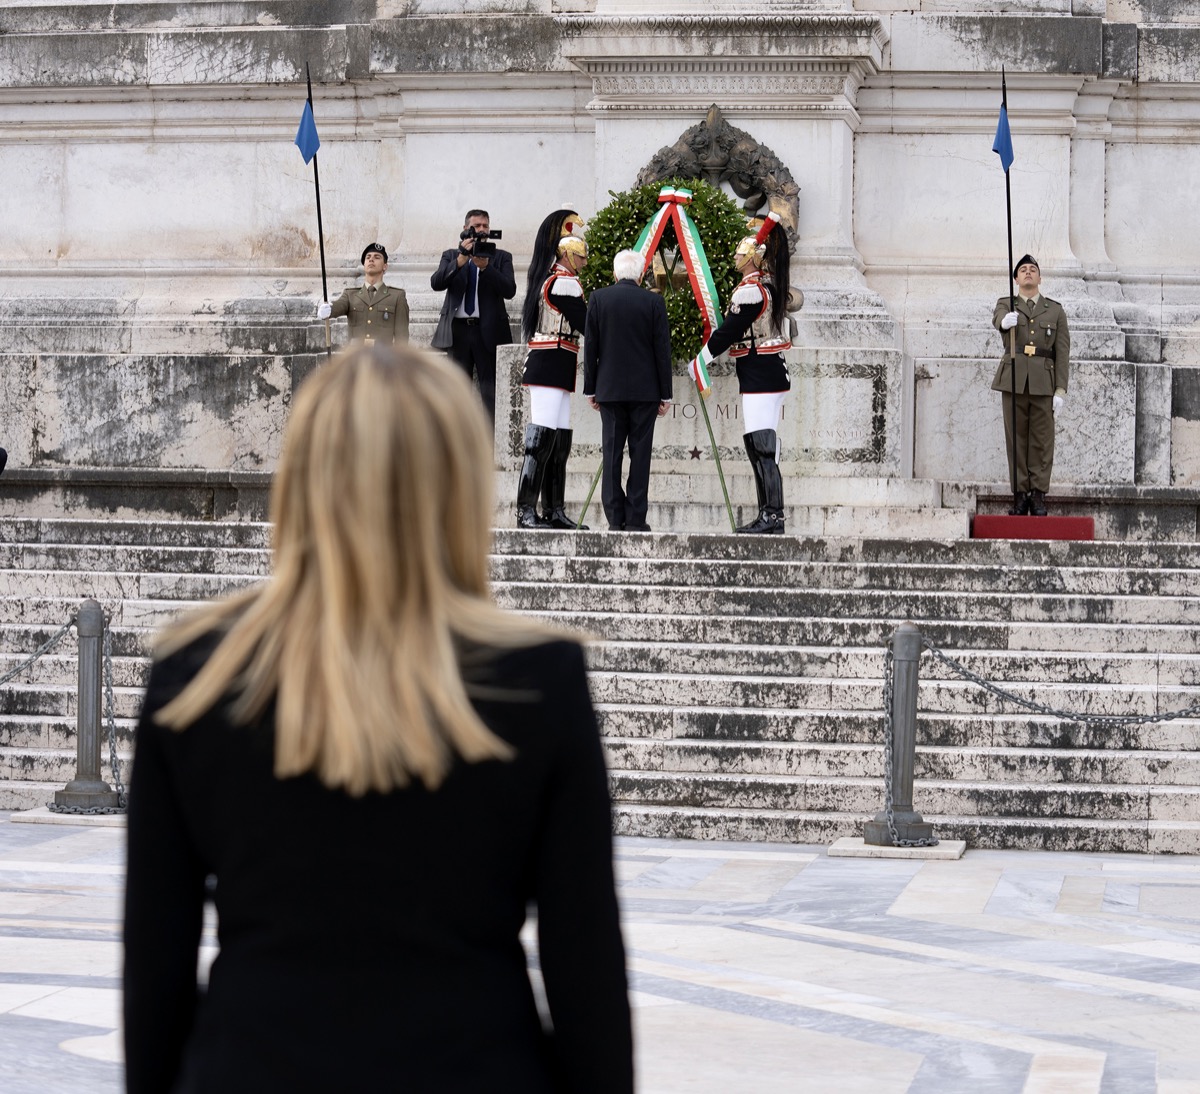 25 Aprile, Giorgia Meloni all'Altare della Patria con Mattarella: "La fine del fascismo pose le basi per la democrazia"